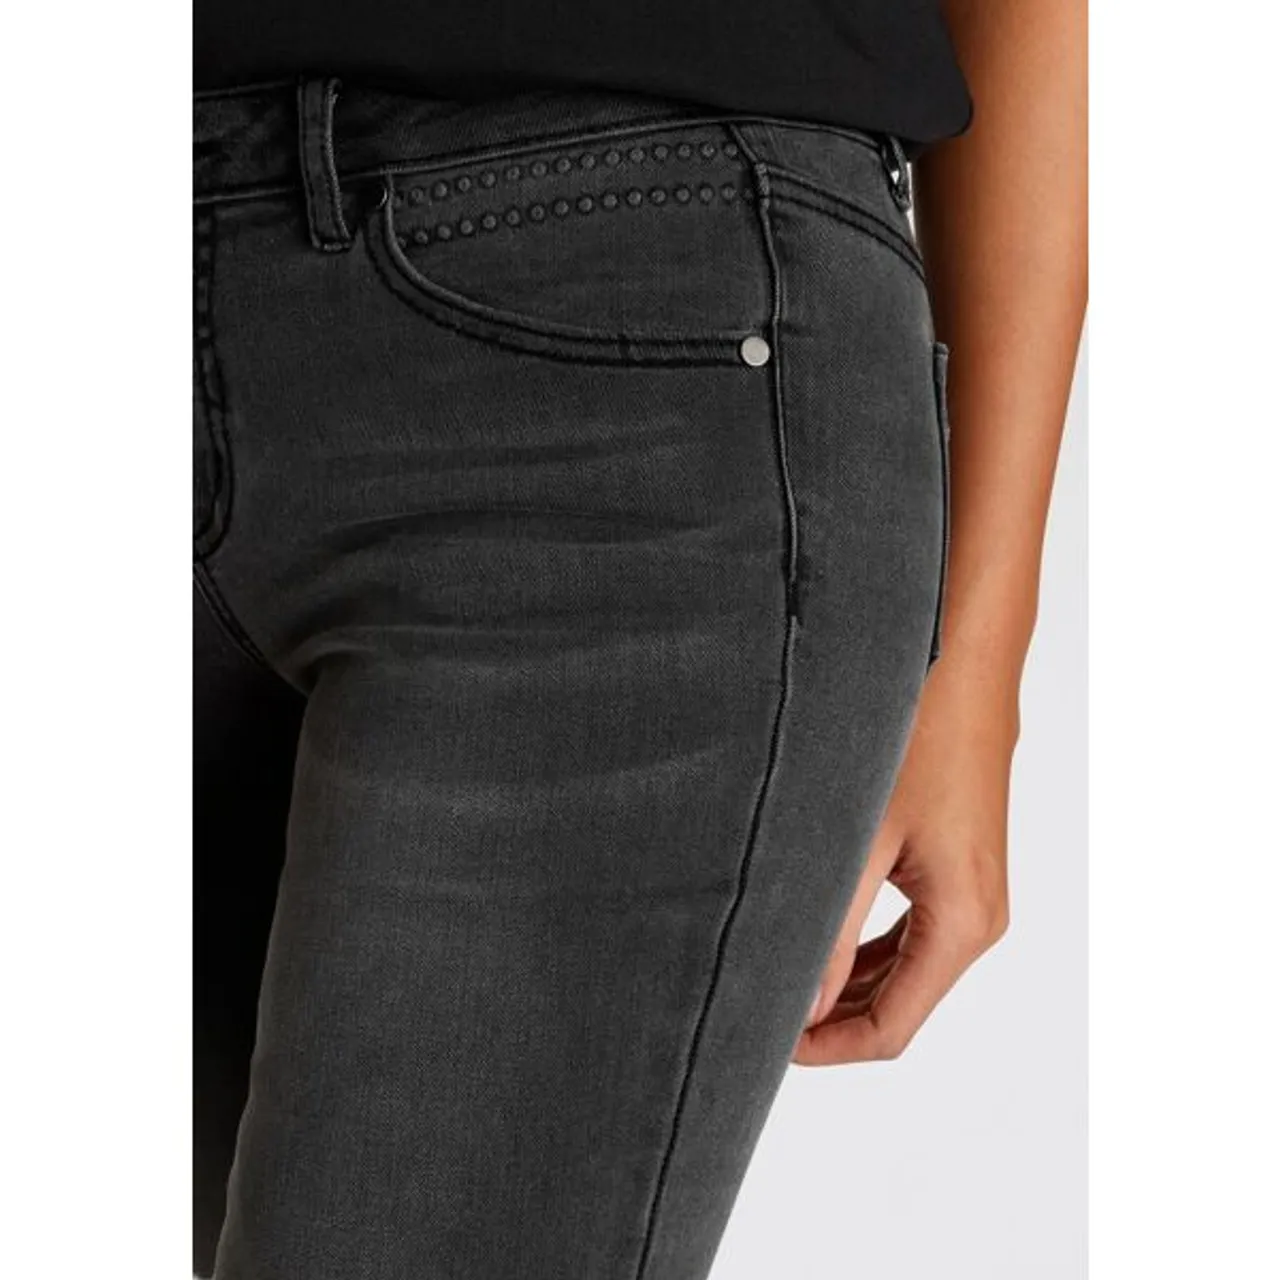 Skinny-fit-Jeans ARIZONA Gr. 38, N-Gr, grau (dark grey used) Damen Jeans Röhrenjeans